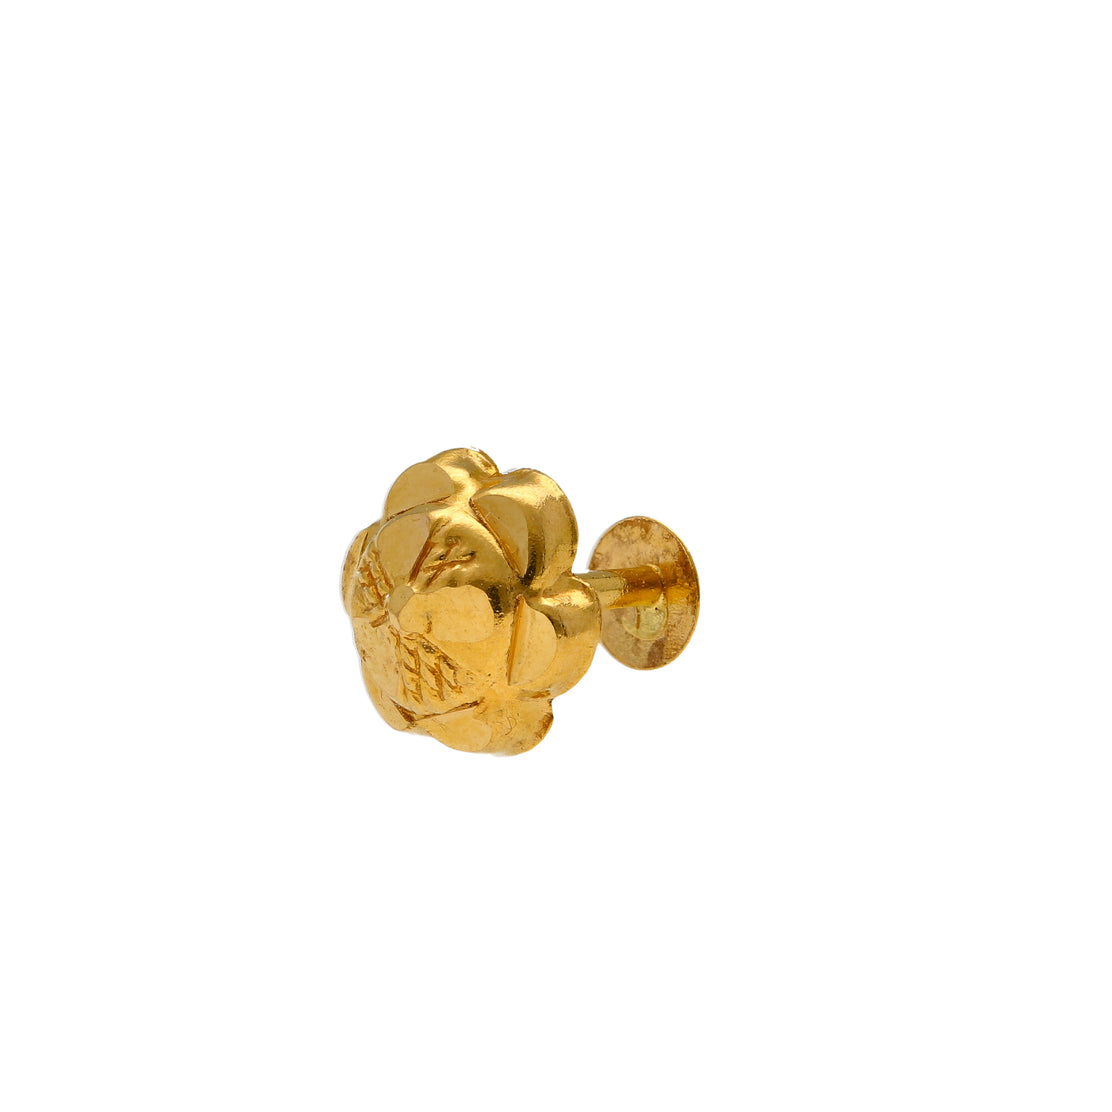 Buy Gold & Diamond Nose Ring In India Starting Range @ ₹6500/-